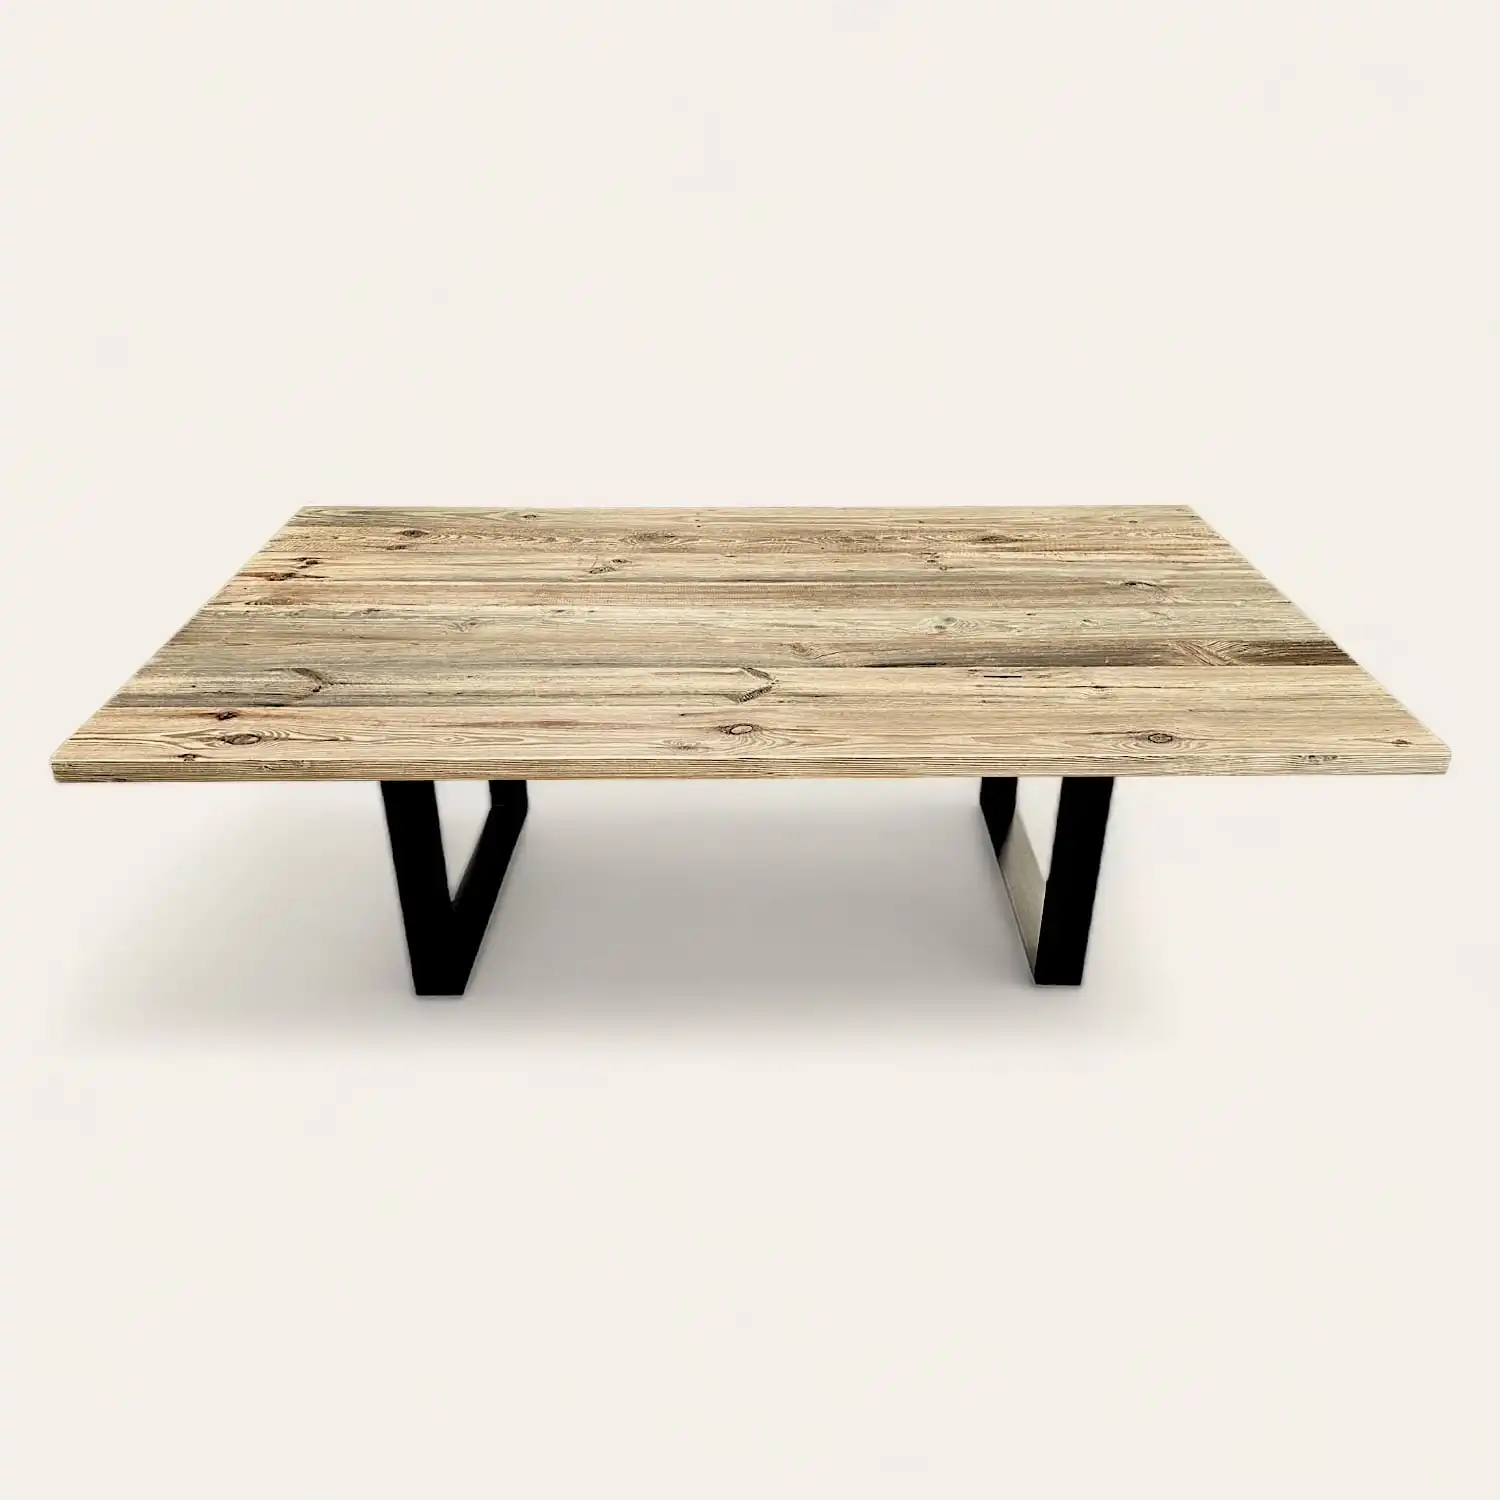  Une table en bois vieilli avec des pieds noirs sur fond blanc. 